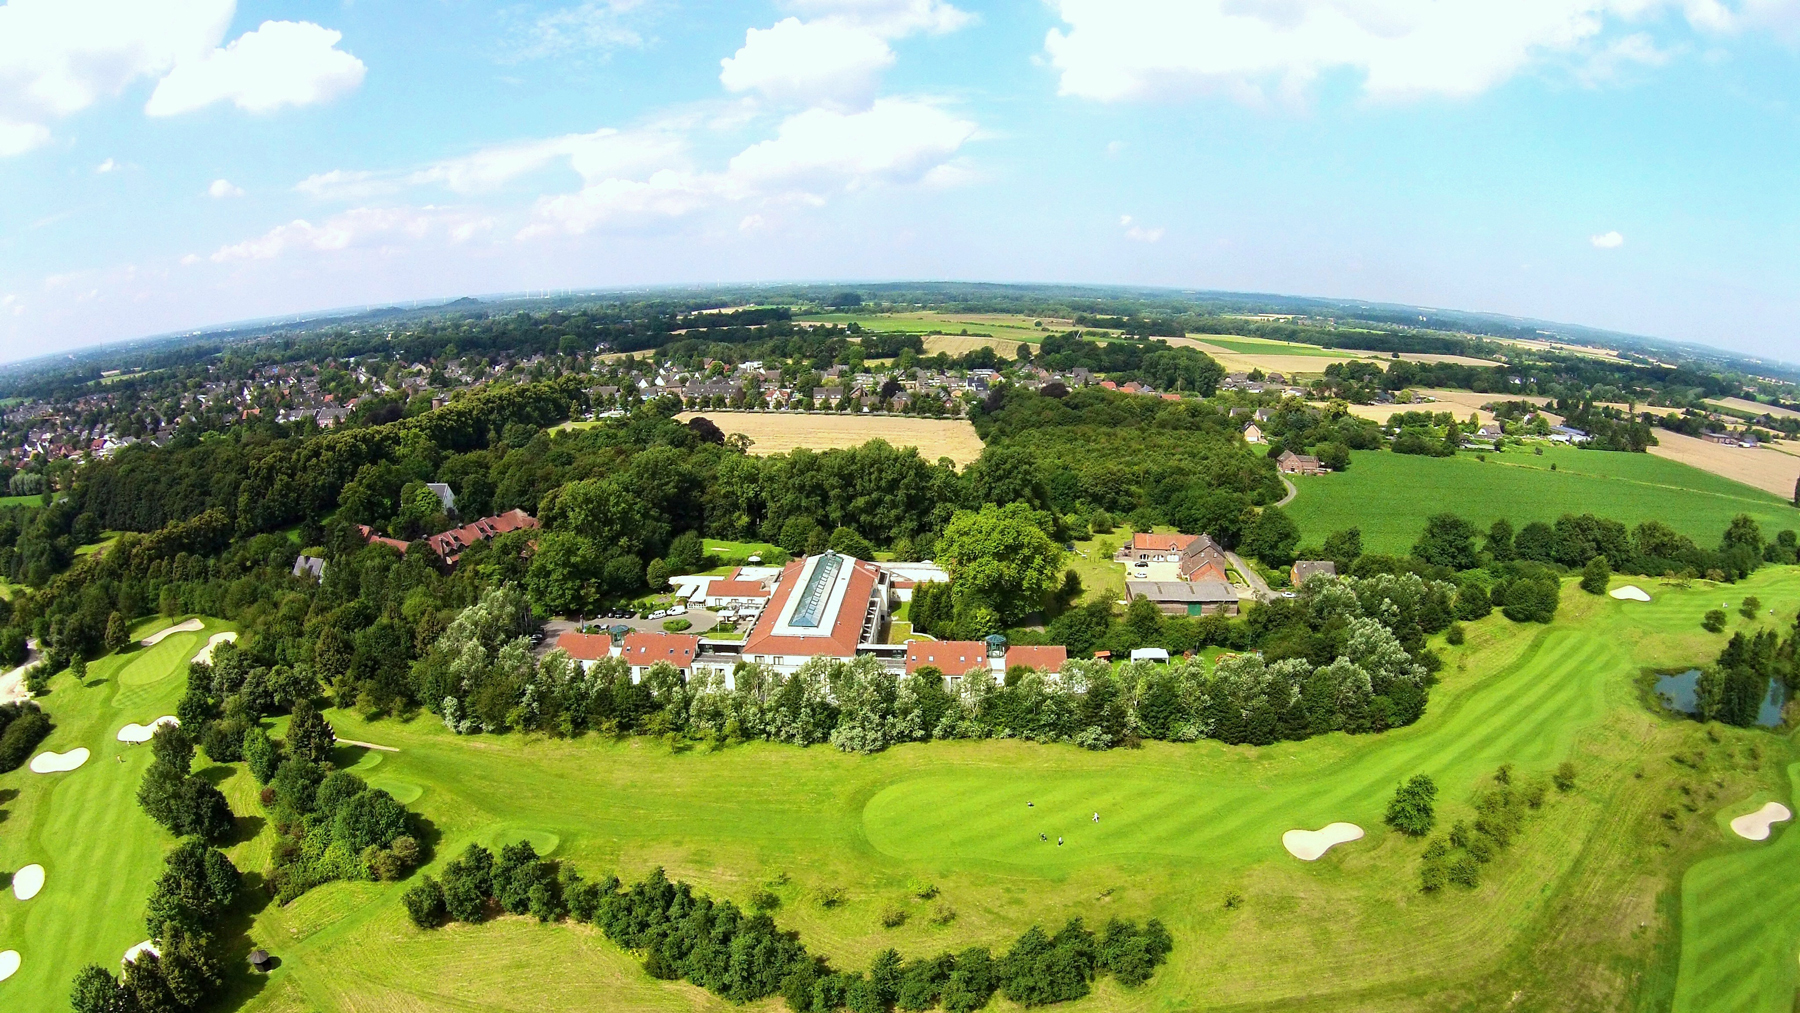 Das Mercure Tagungs- & Landhotel Krefeld zählt beim Wettbewerb TOP 250 zu den fünf besten Tagungshotels in DeutschlandEin Lichtblick für die Tagungsbranche